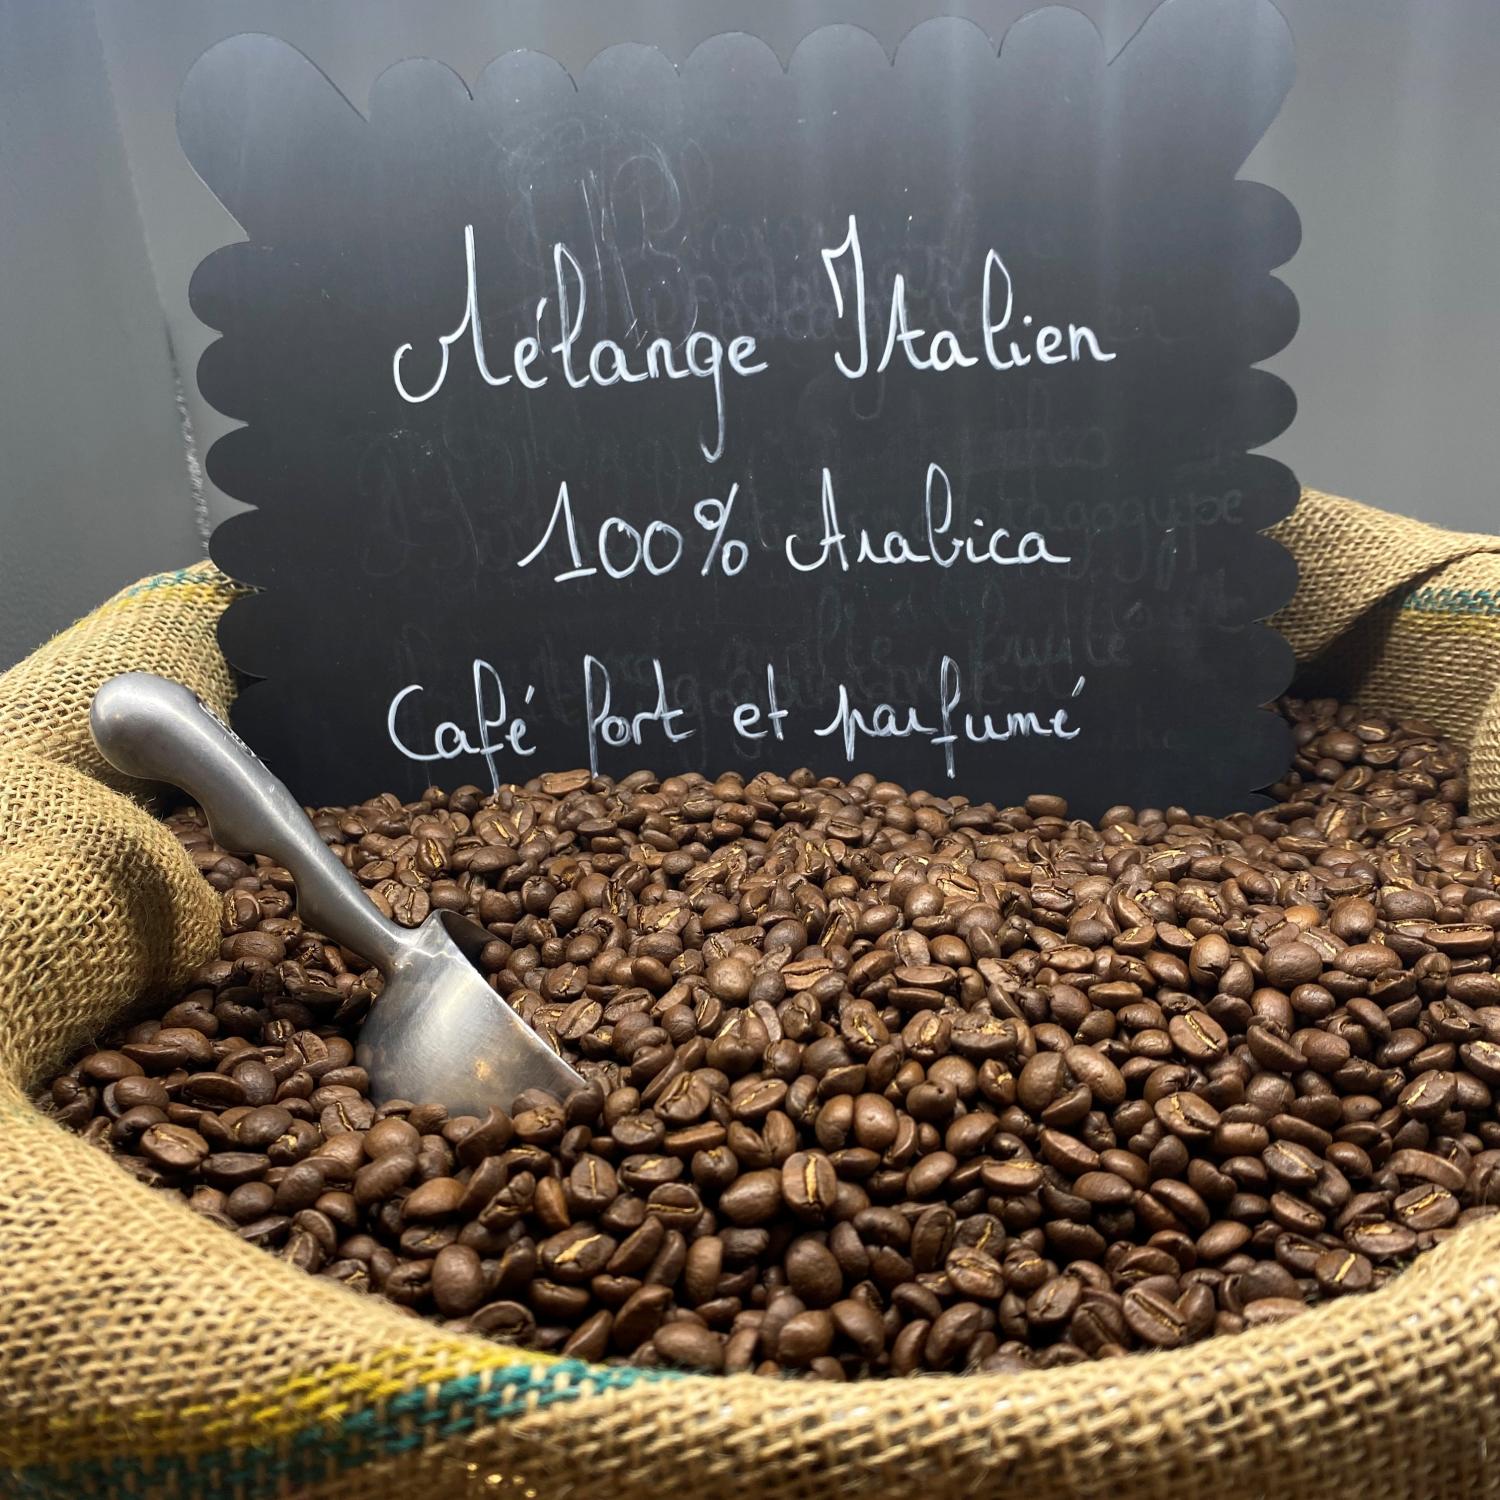 Café Mélange Italien 100% Arabica